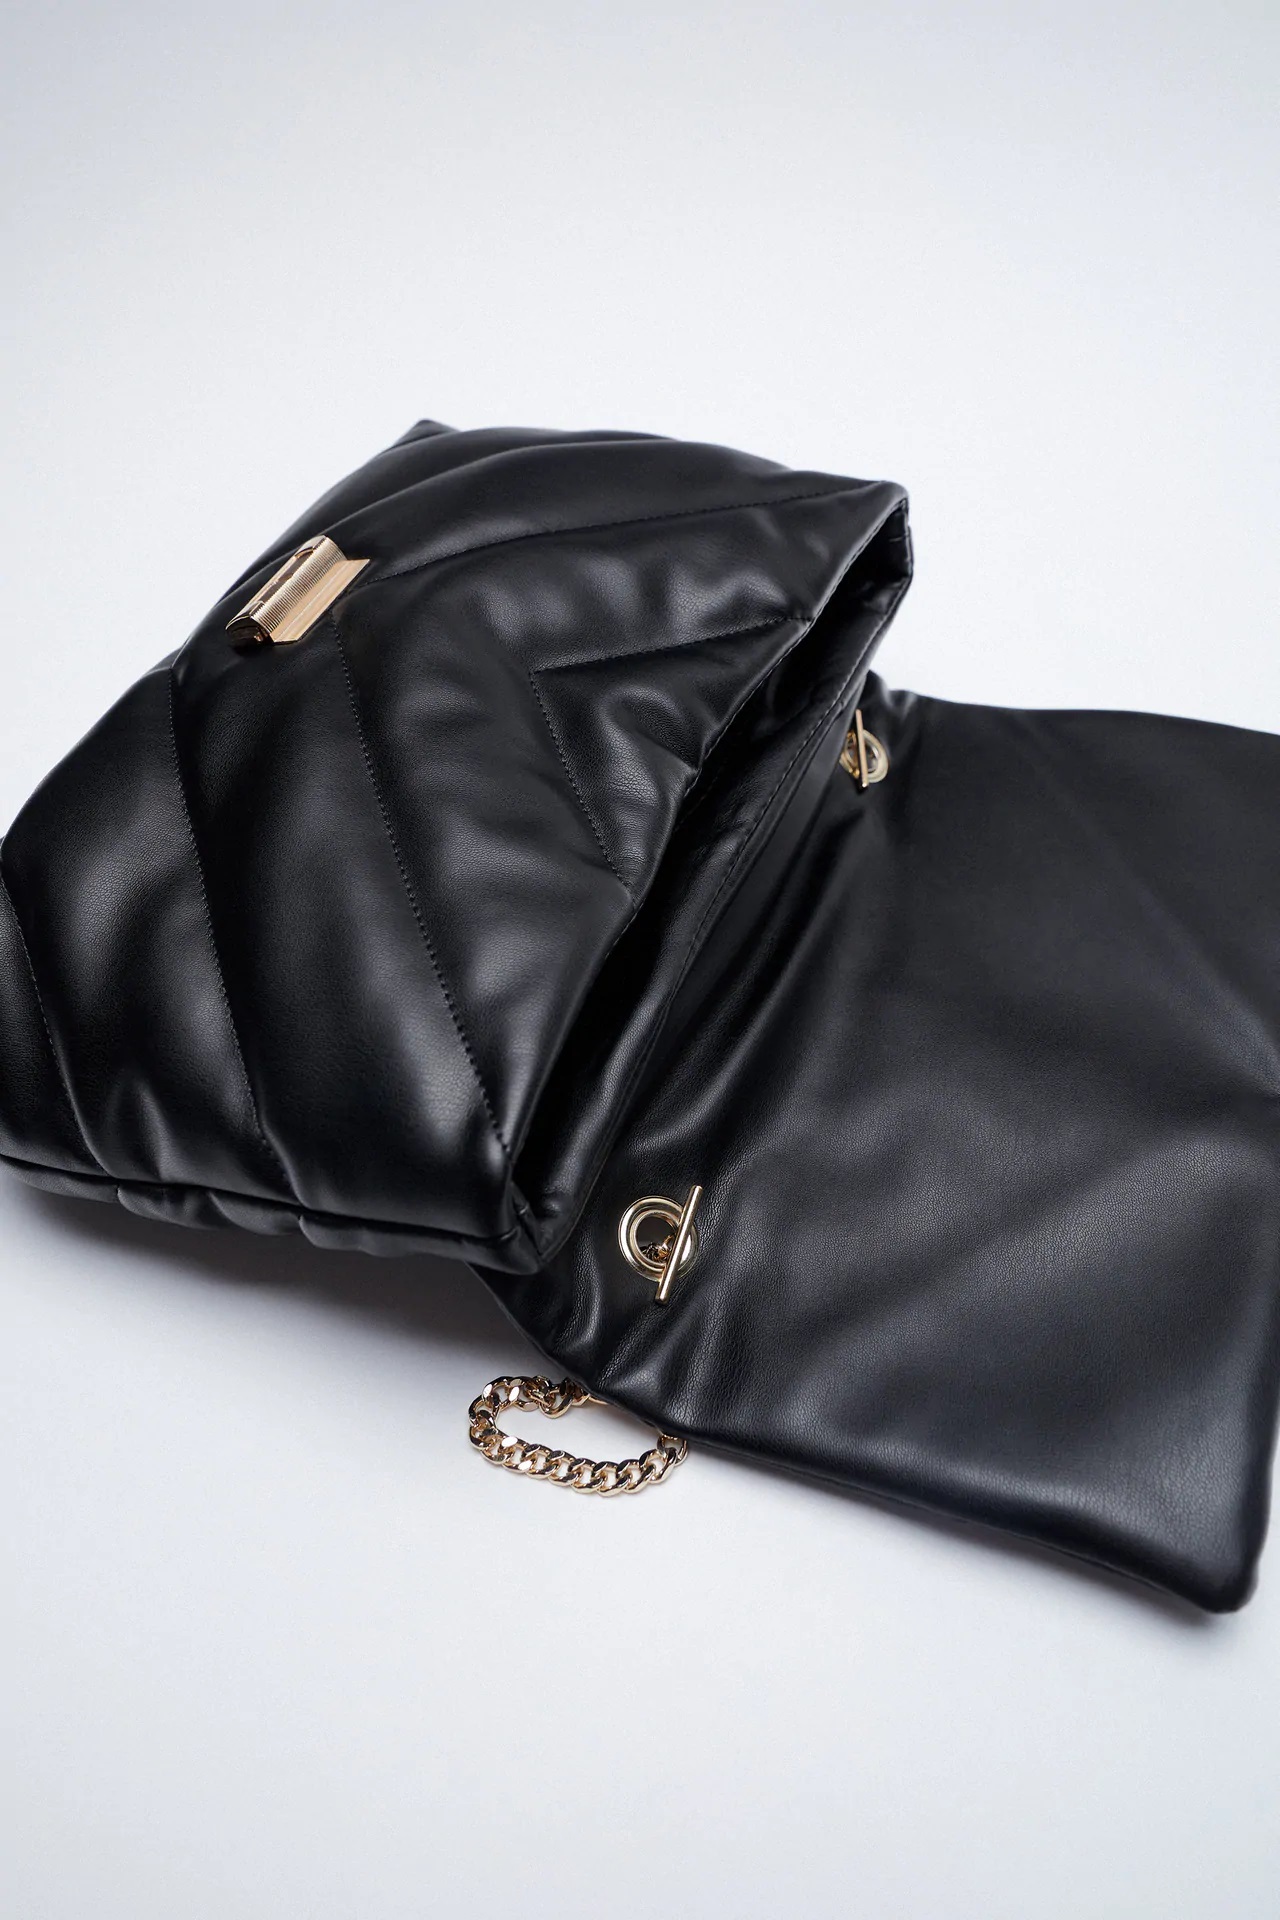 Zara crea un clon del bolso más vendido de YSL de 1.600 euros | Inditex